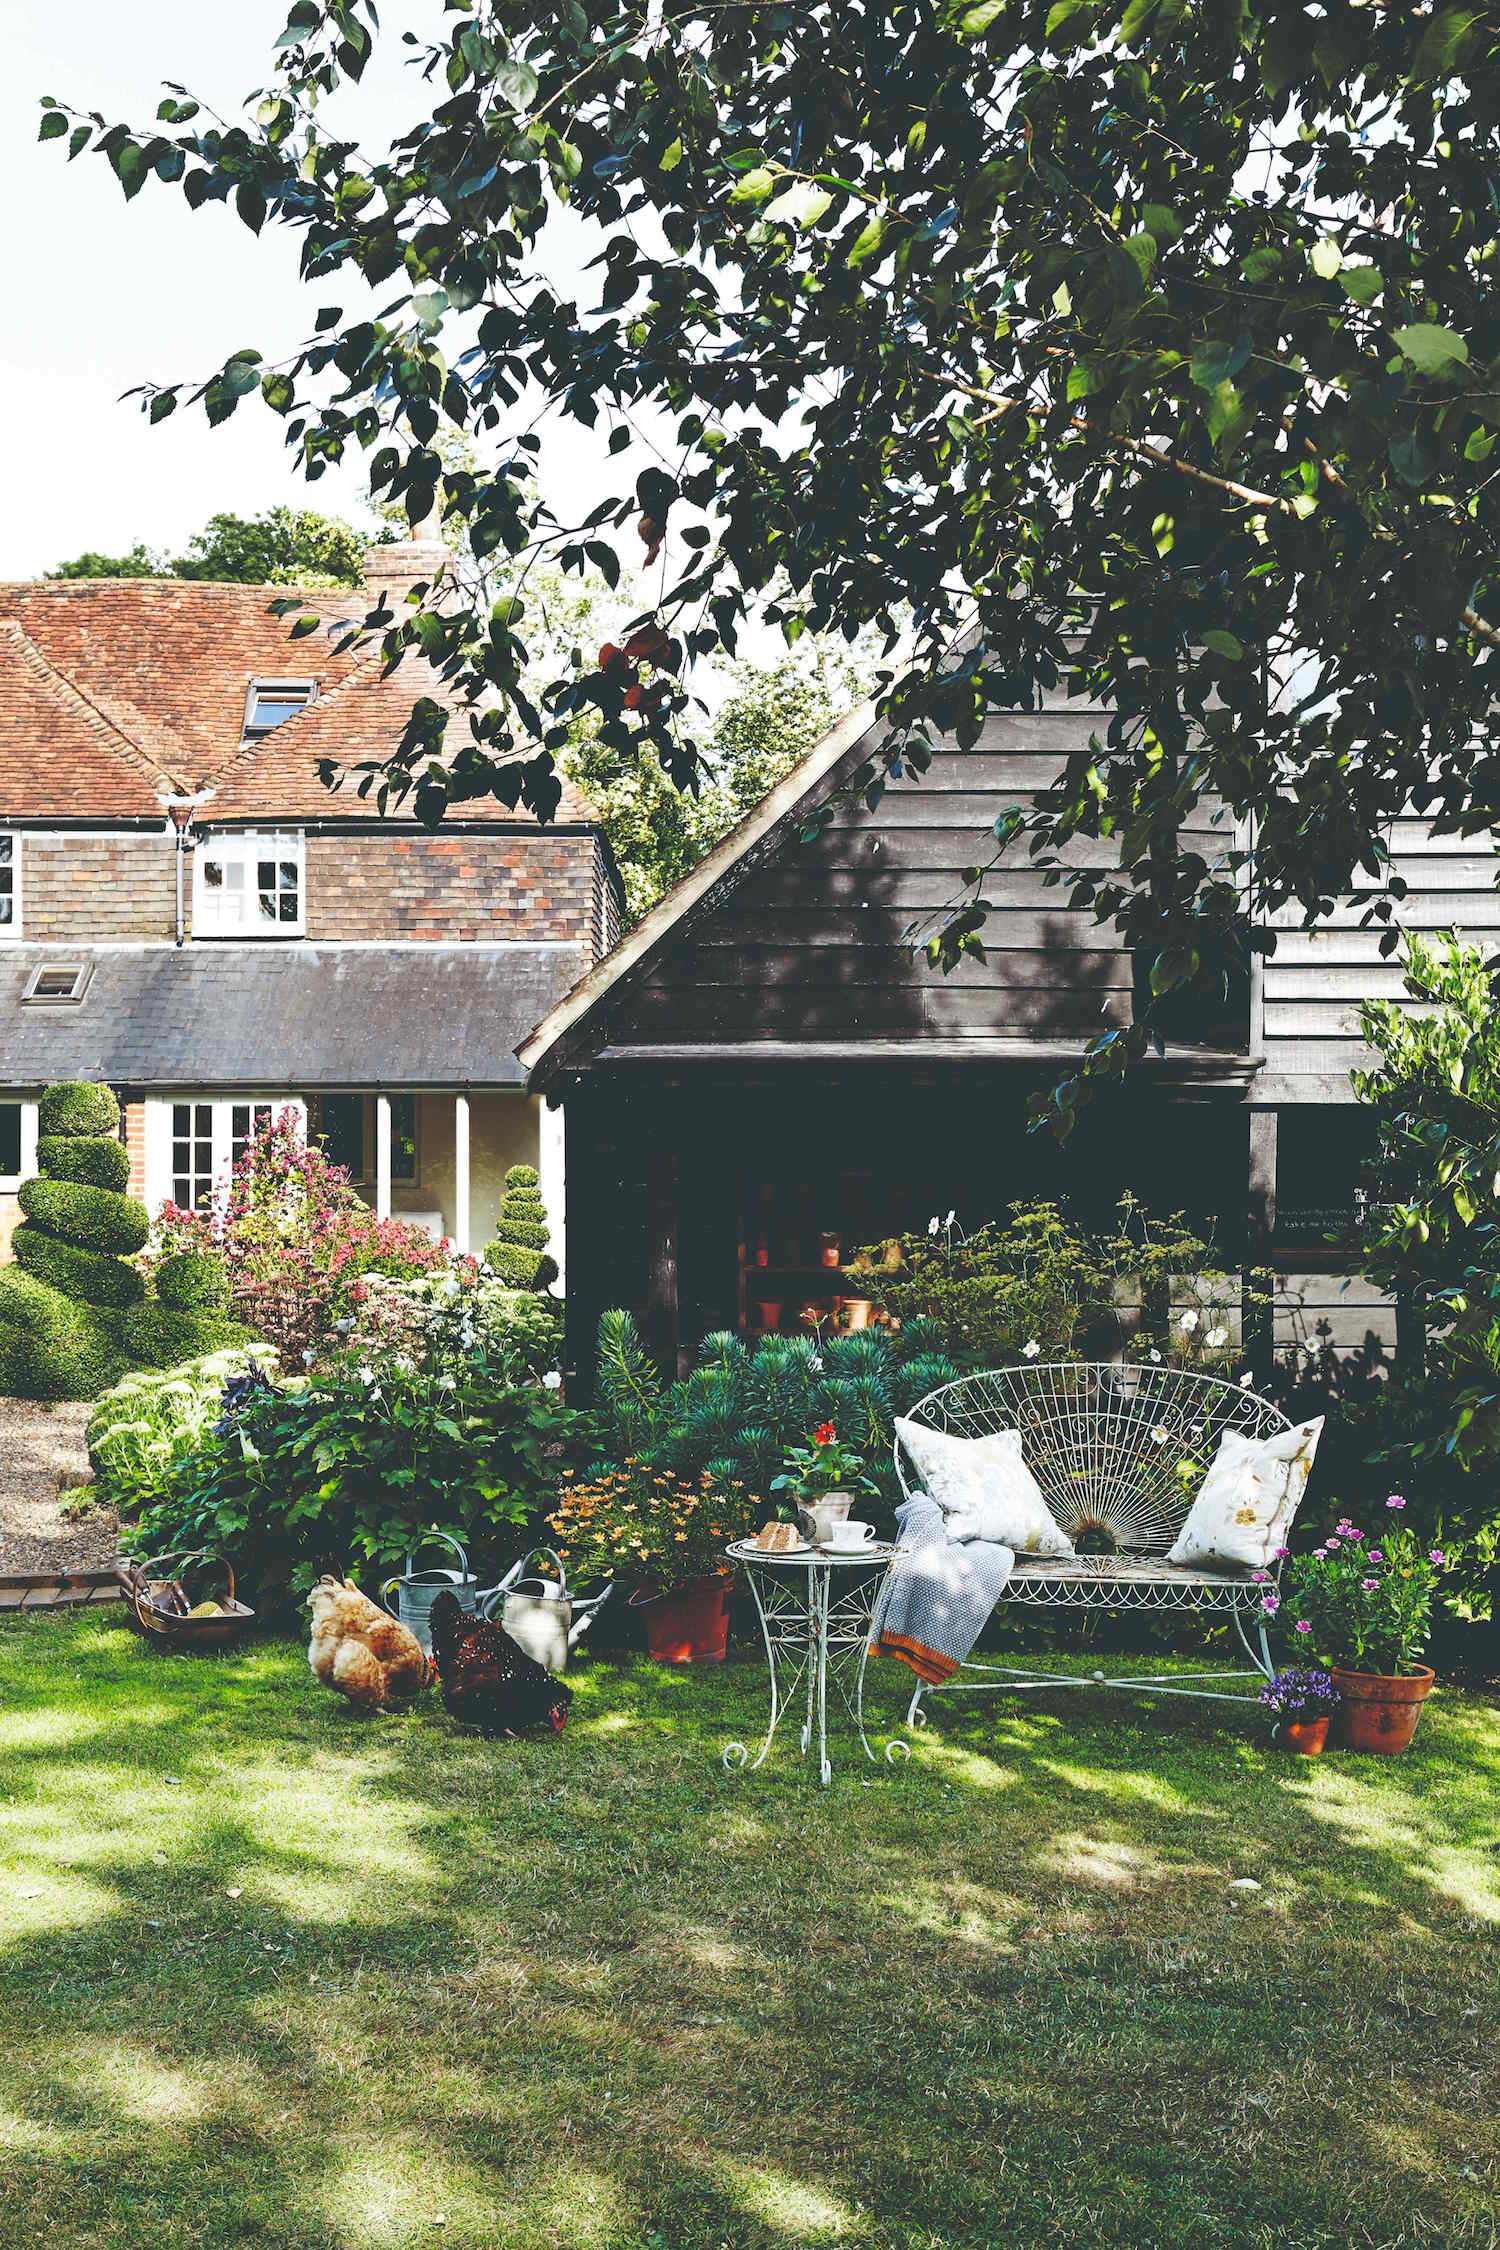 Zahrada s dvěma slepicemi před anglickým domkem